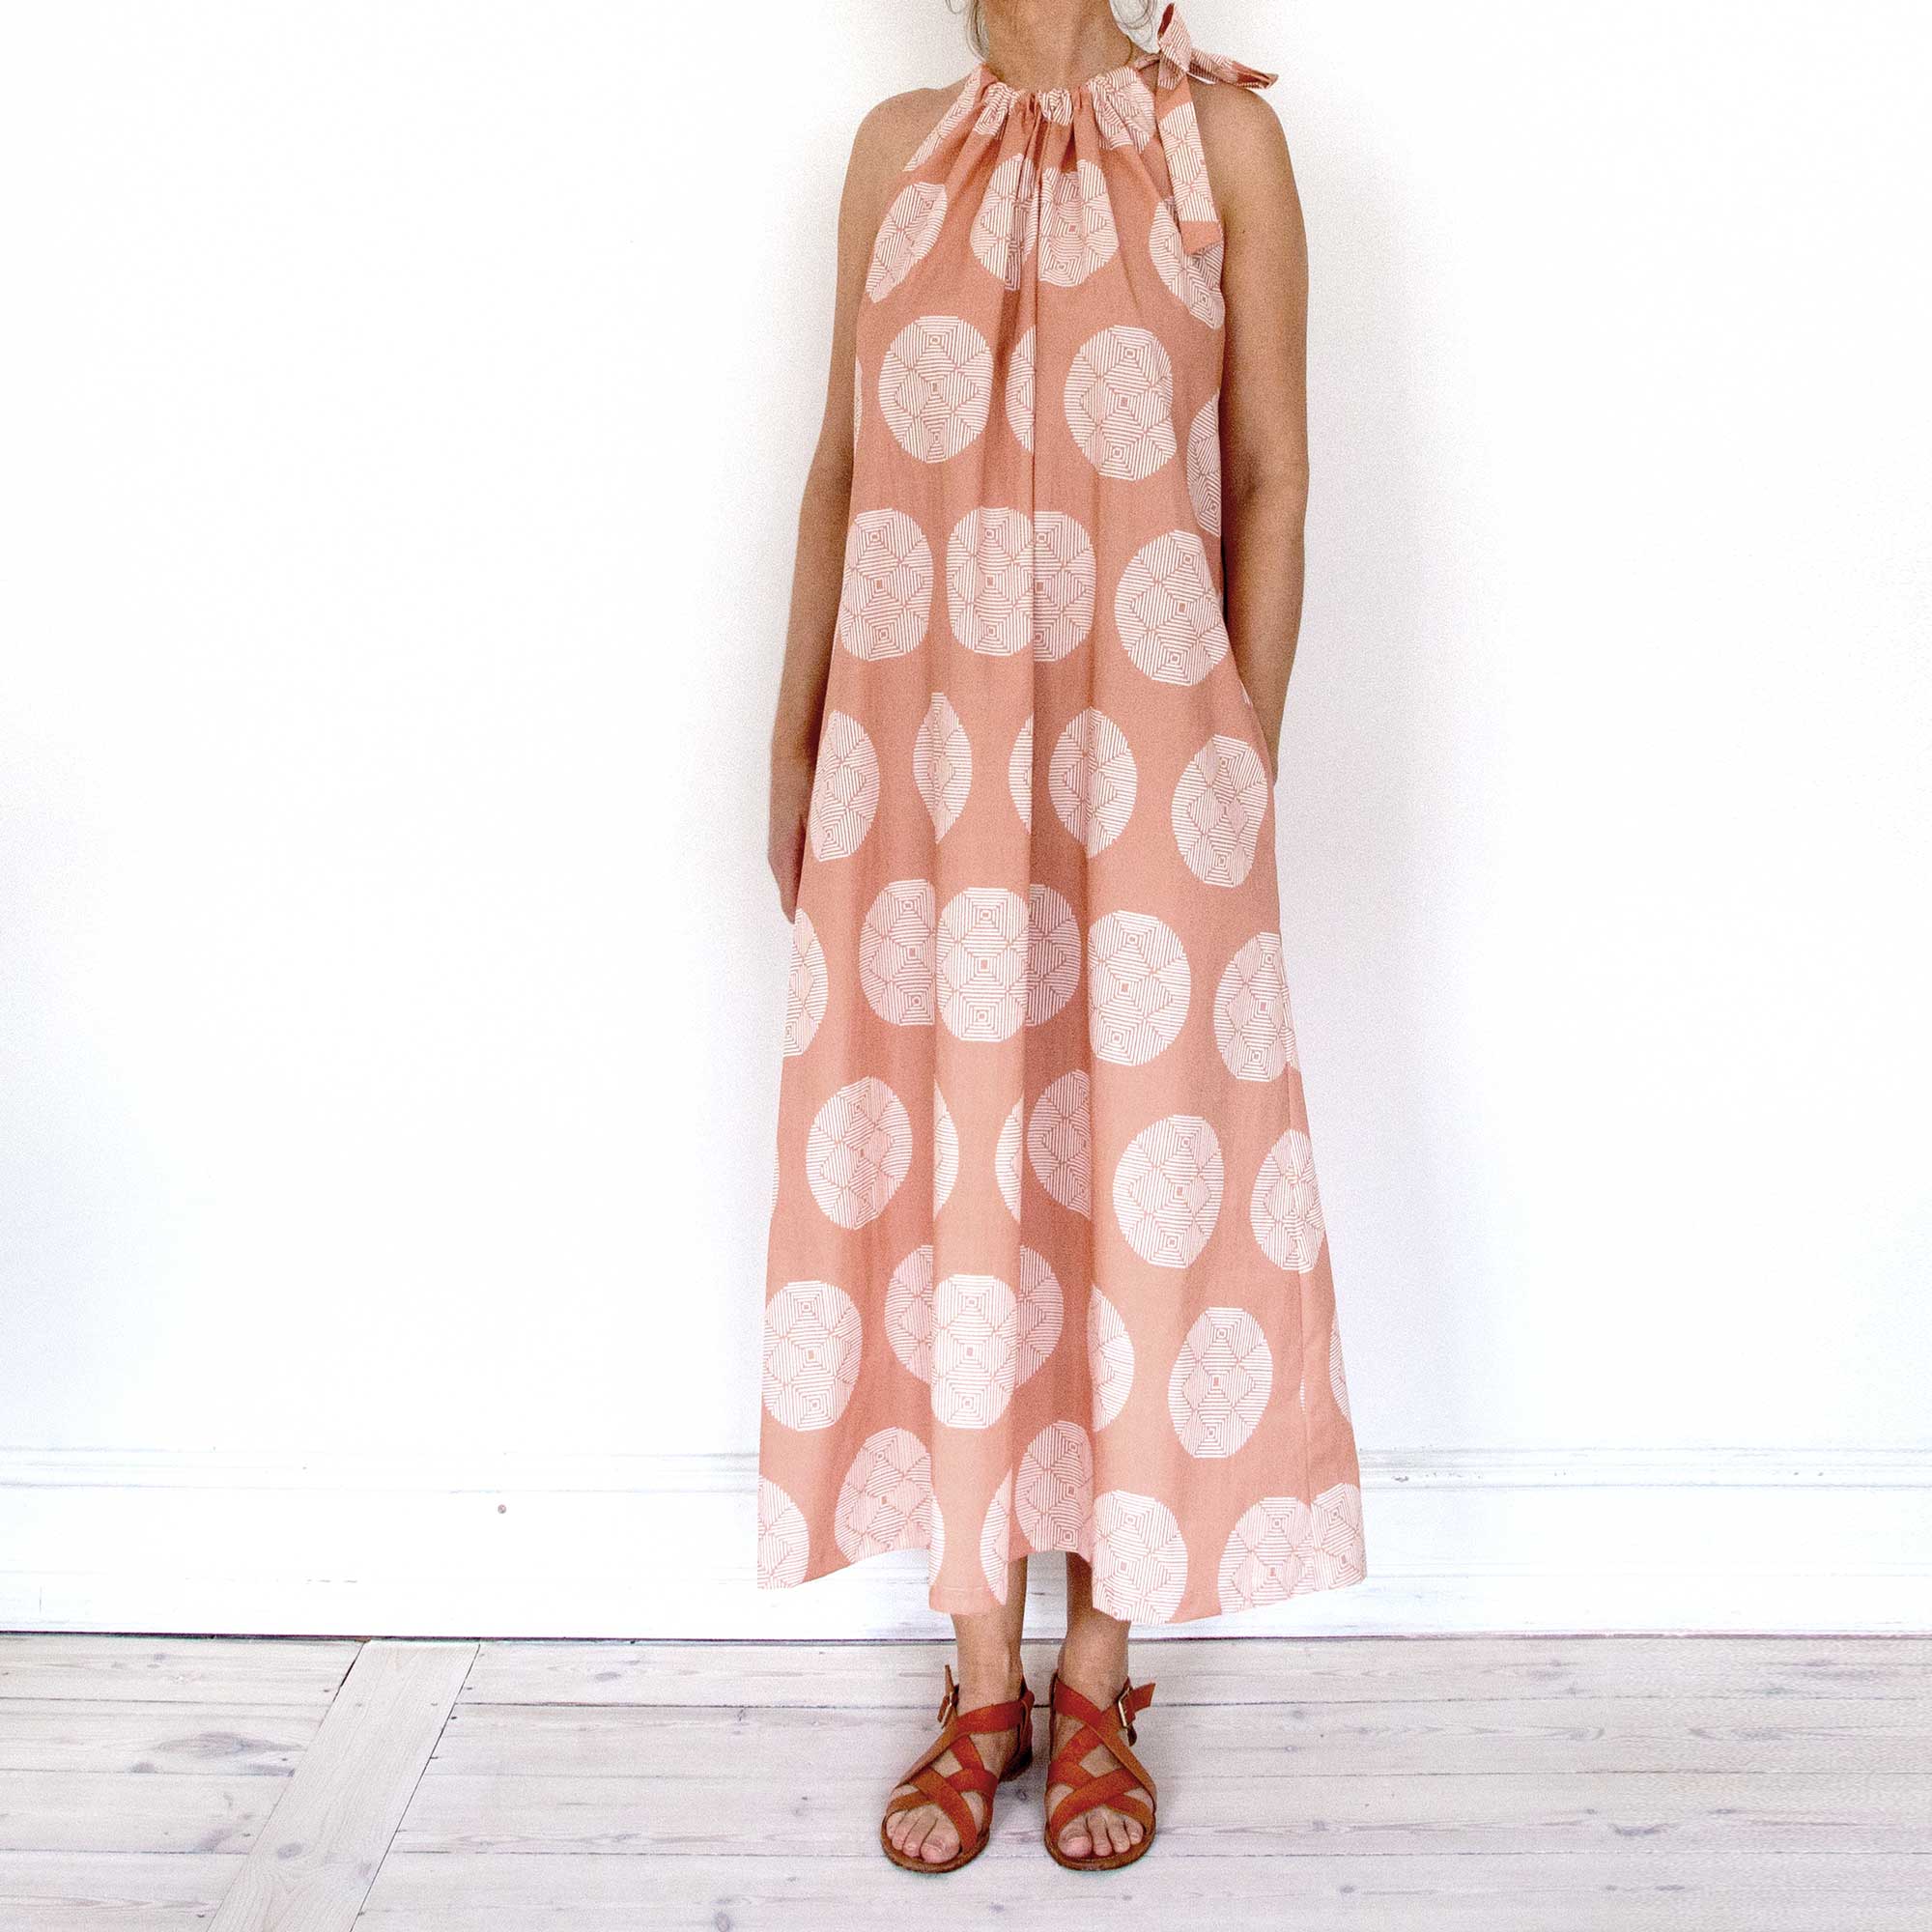 Leh dress, Hana terracotta in organic cotton, printed in Germany sewn in Denmark. Design Anne Rosenberg